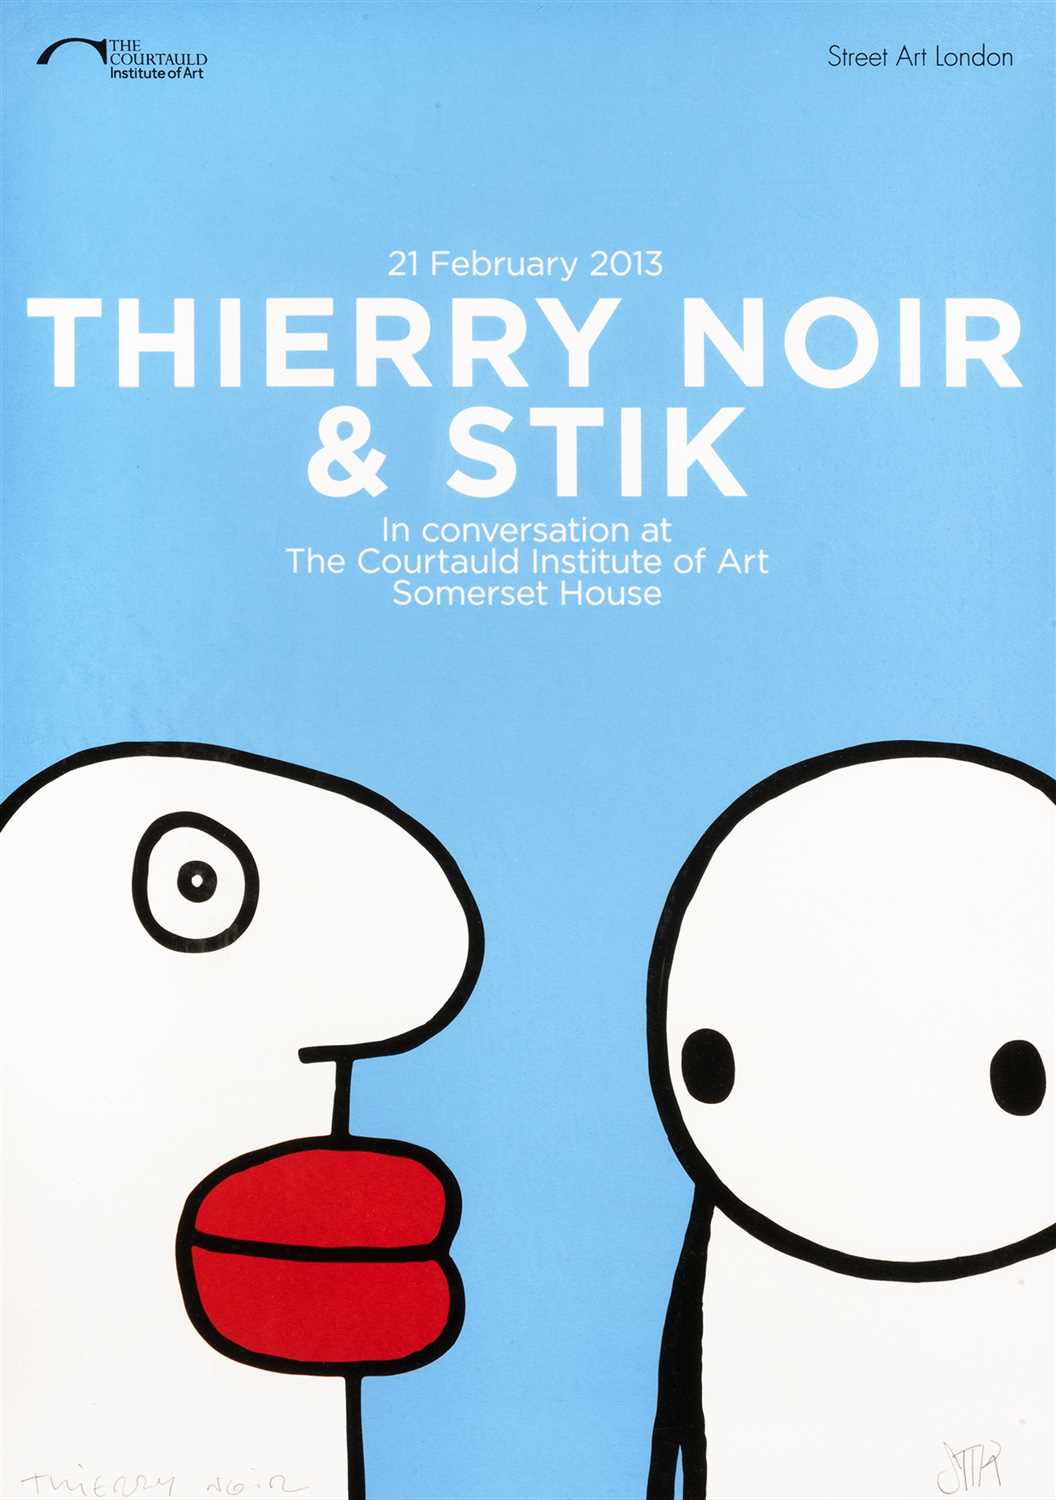 Lot 281 - Stik & Thierry Noir (Collaboration), 'In Conversation', 2013